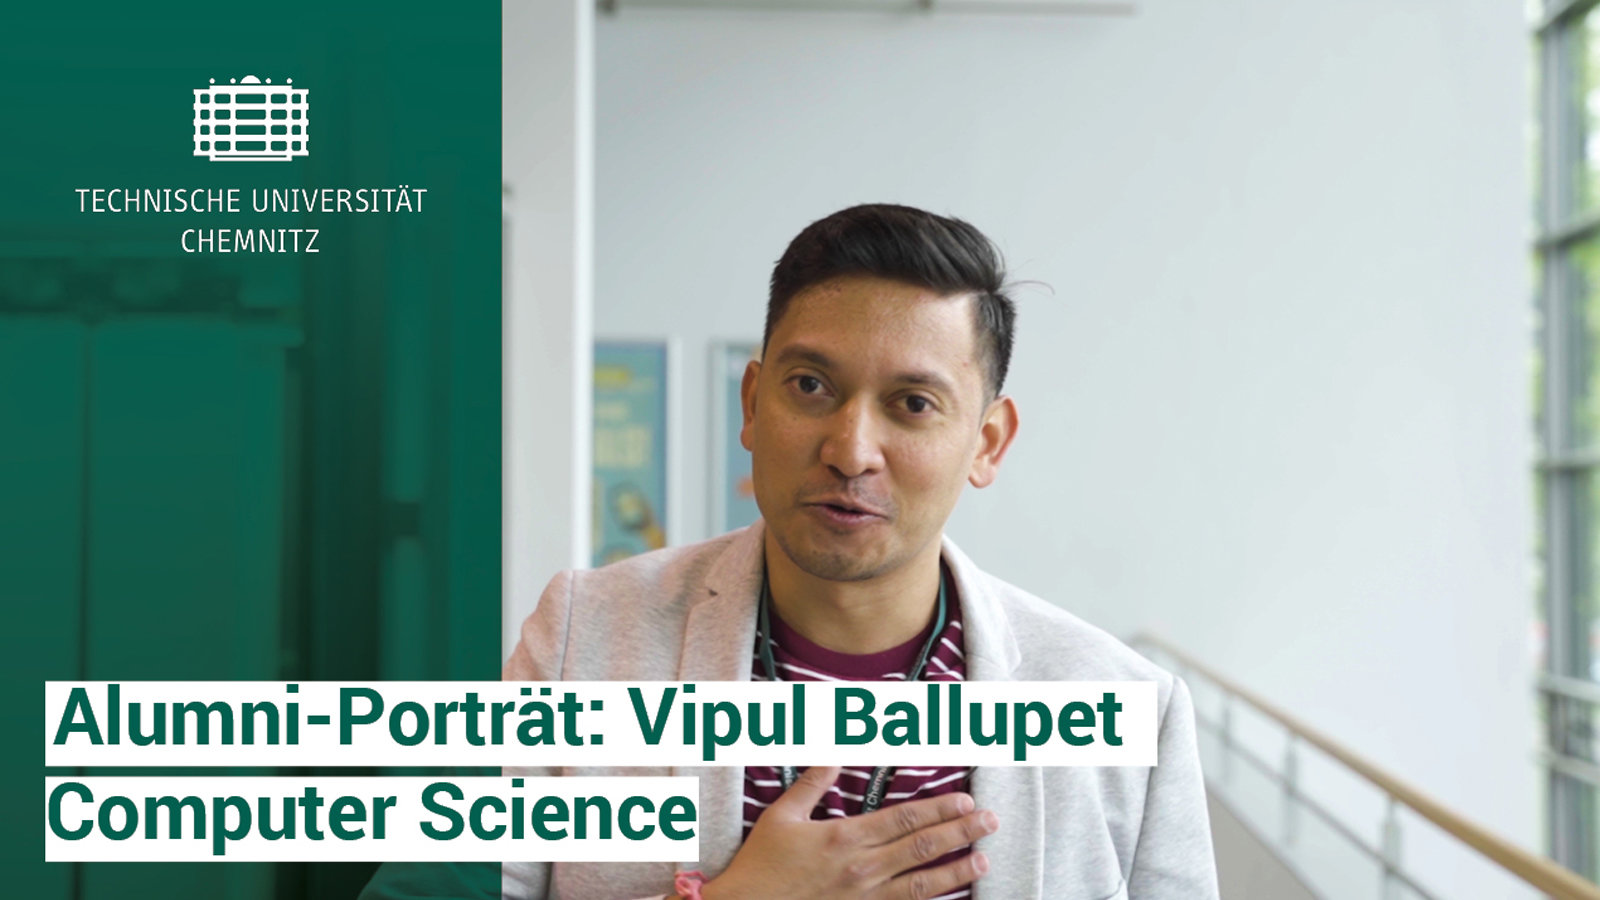 Portrait of Vipul Ballupet